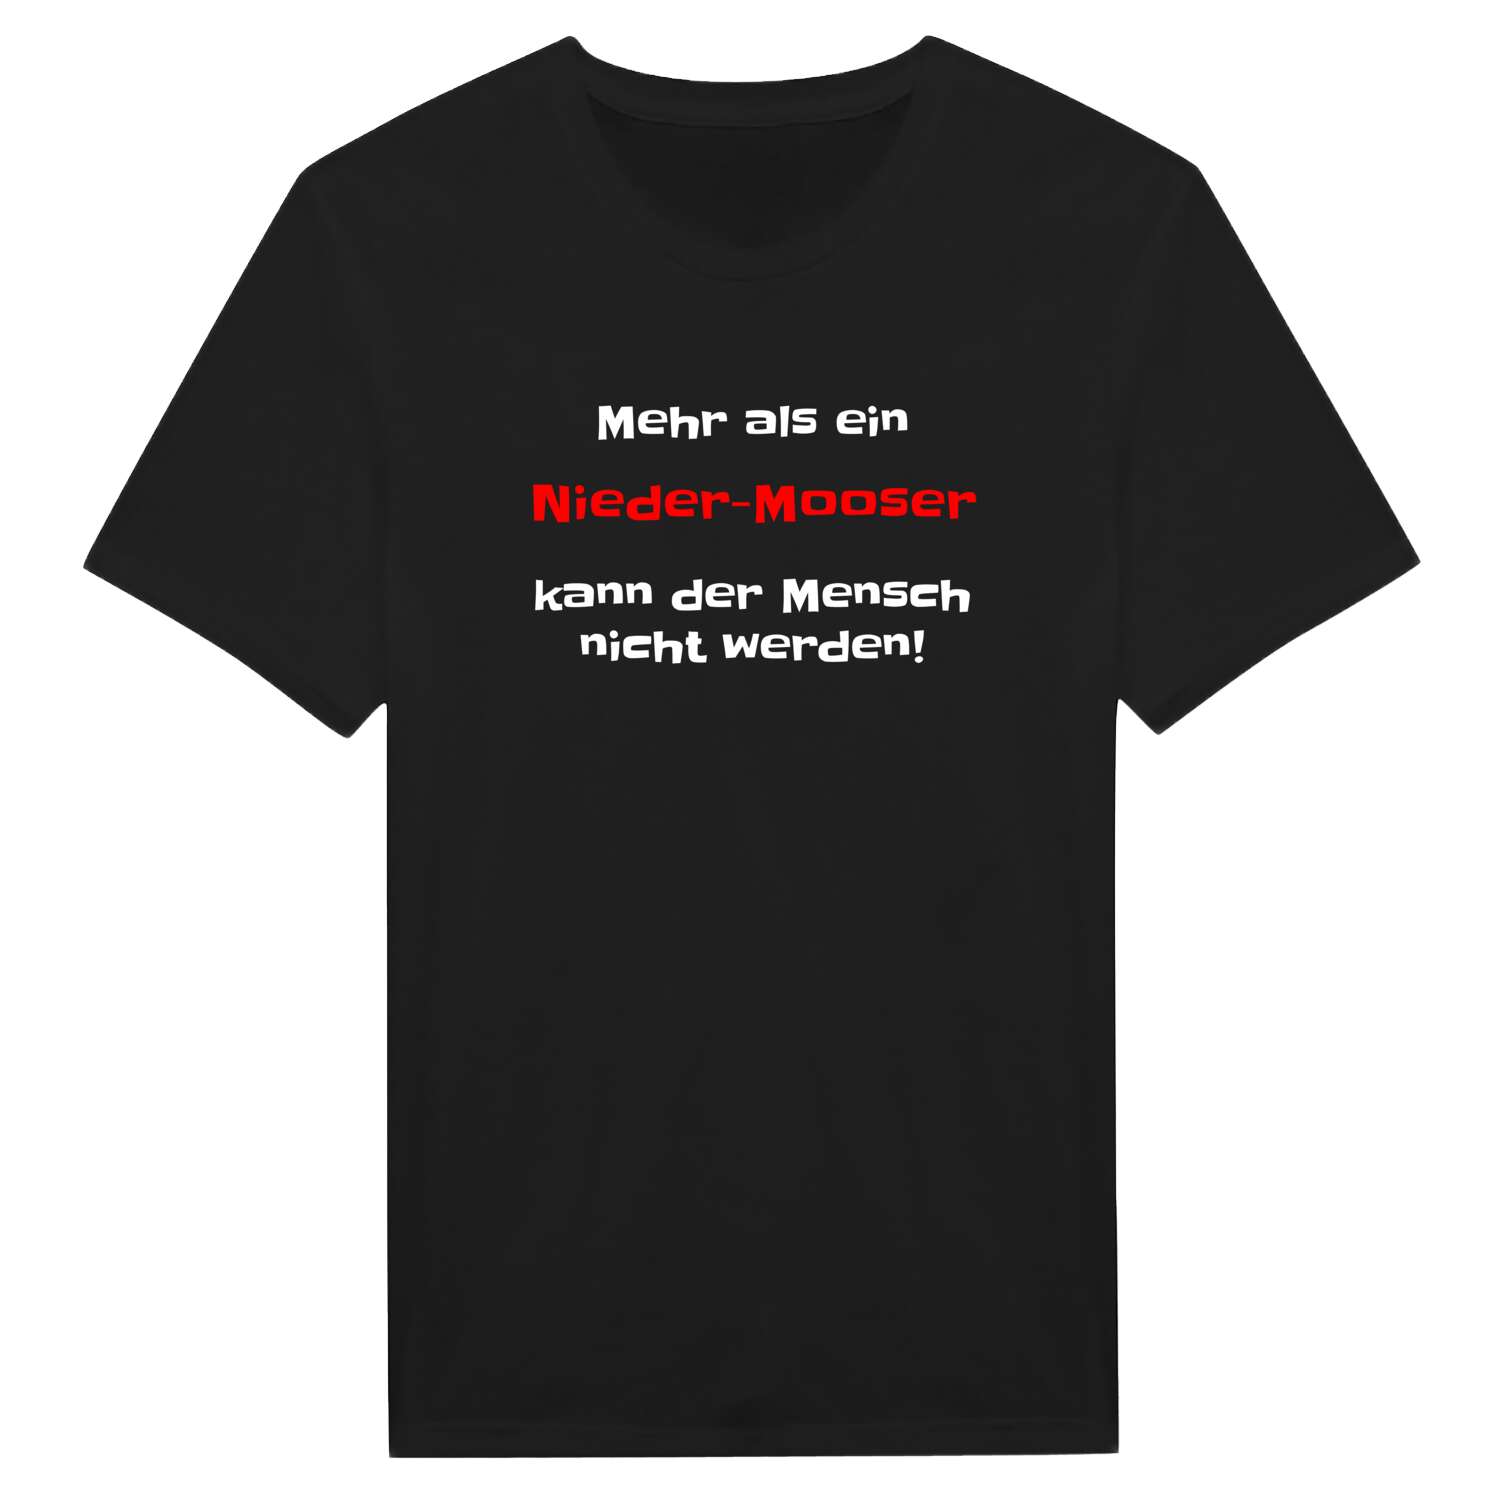 Nieder-Moos T-Shirt »Mehr als ein«